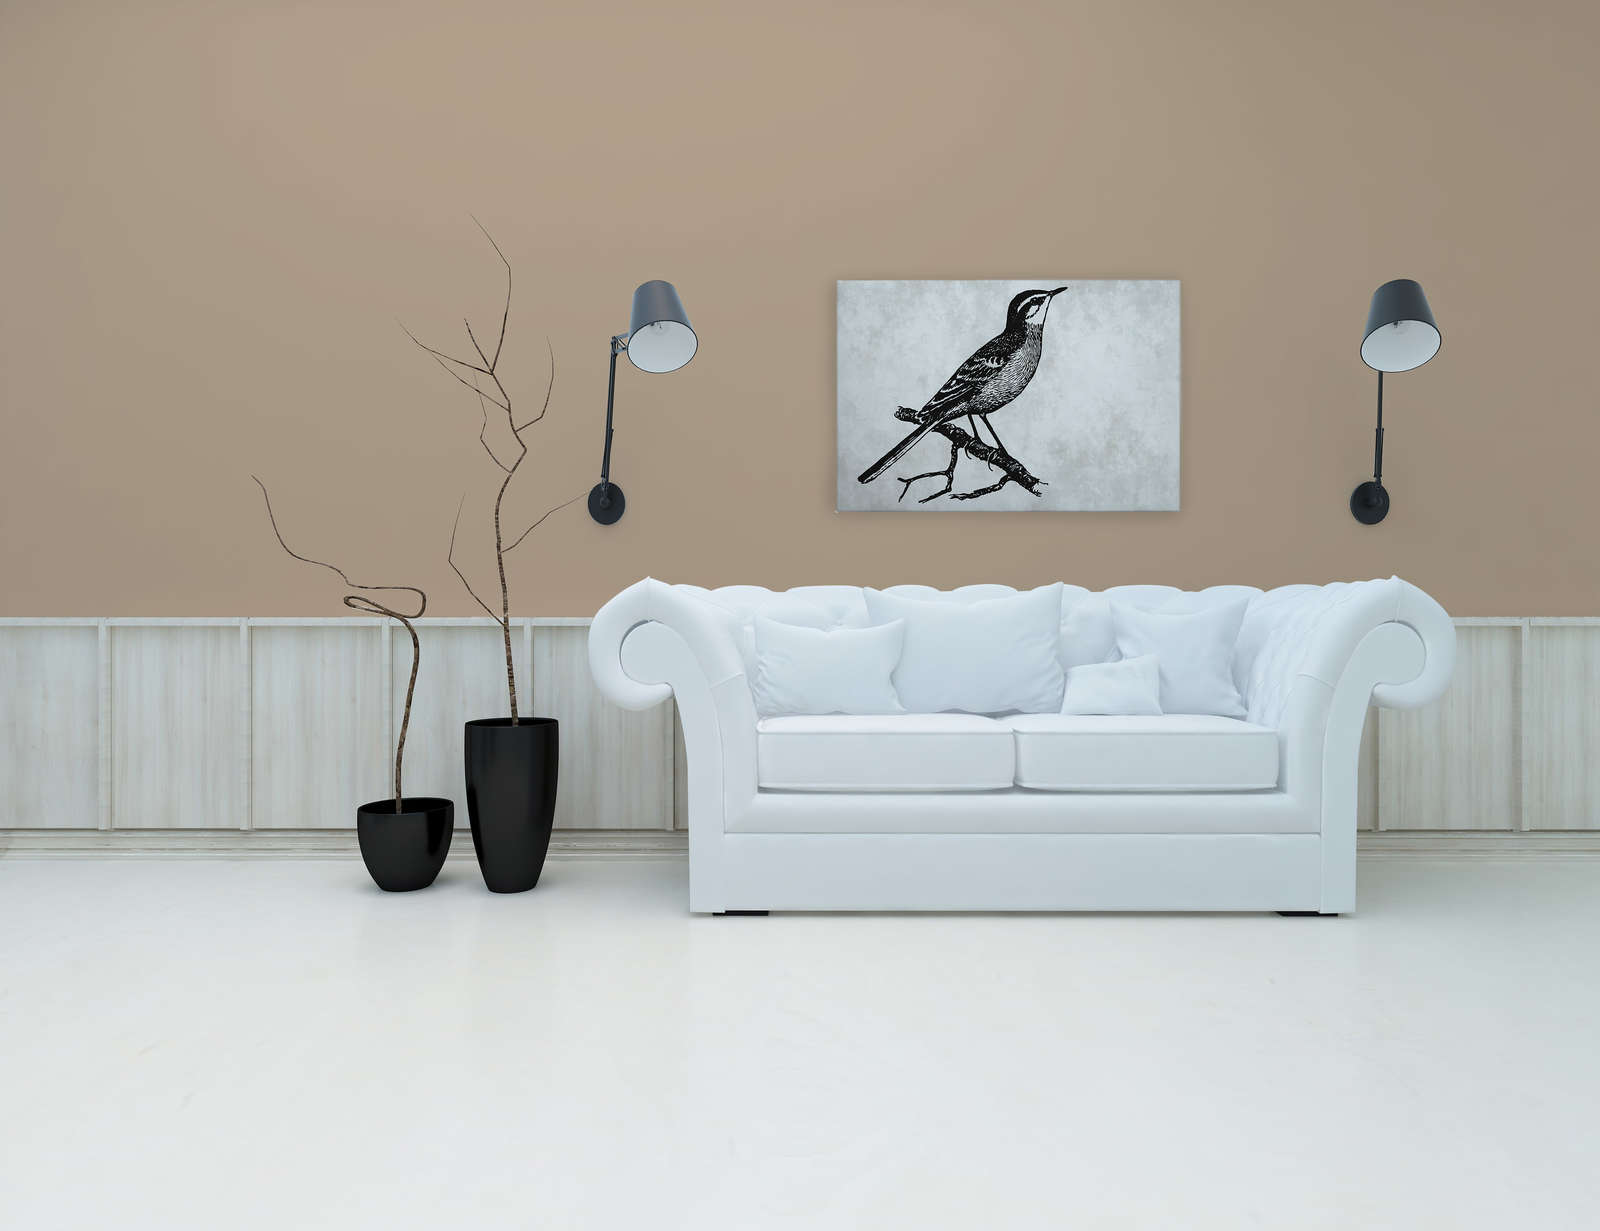             Oiseau toile look dessin avec aspect plâtre - 0,90 m x 0,60 m
        